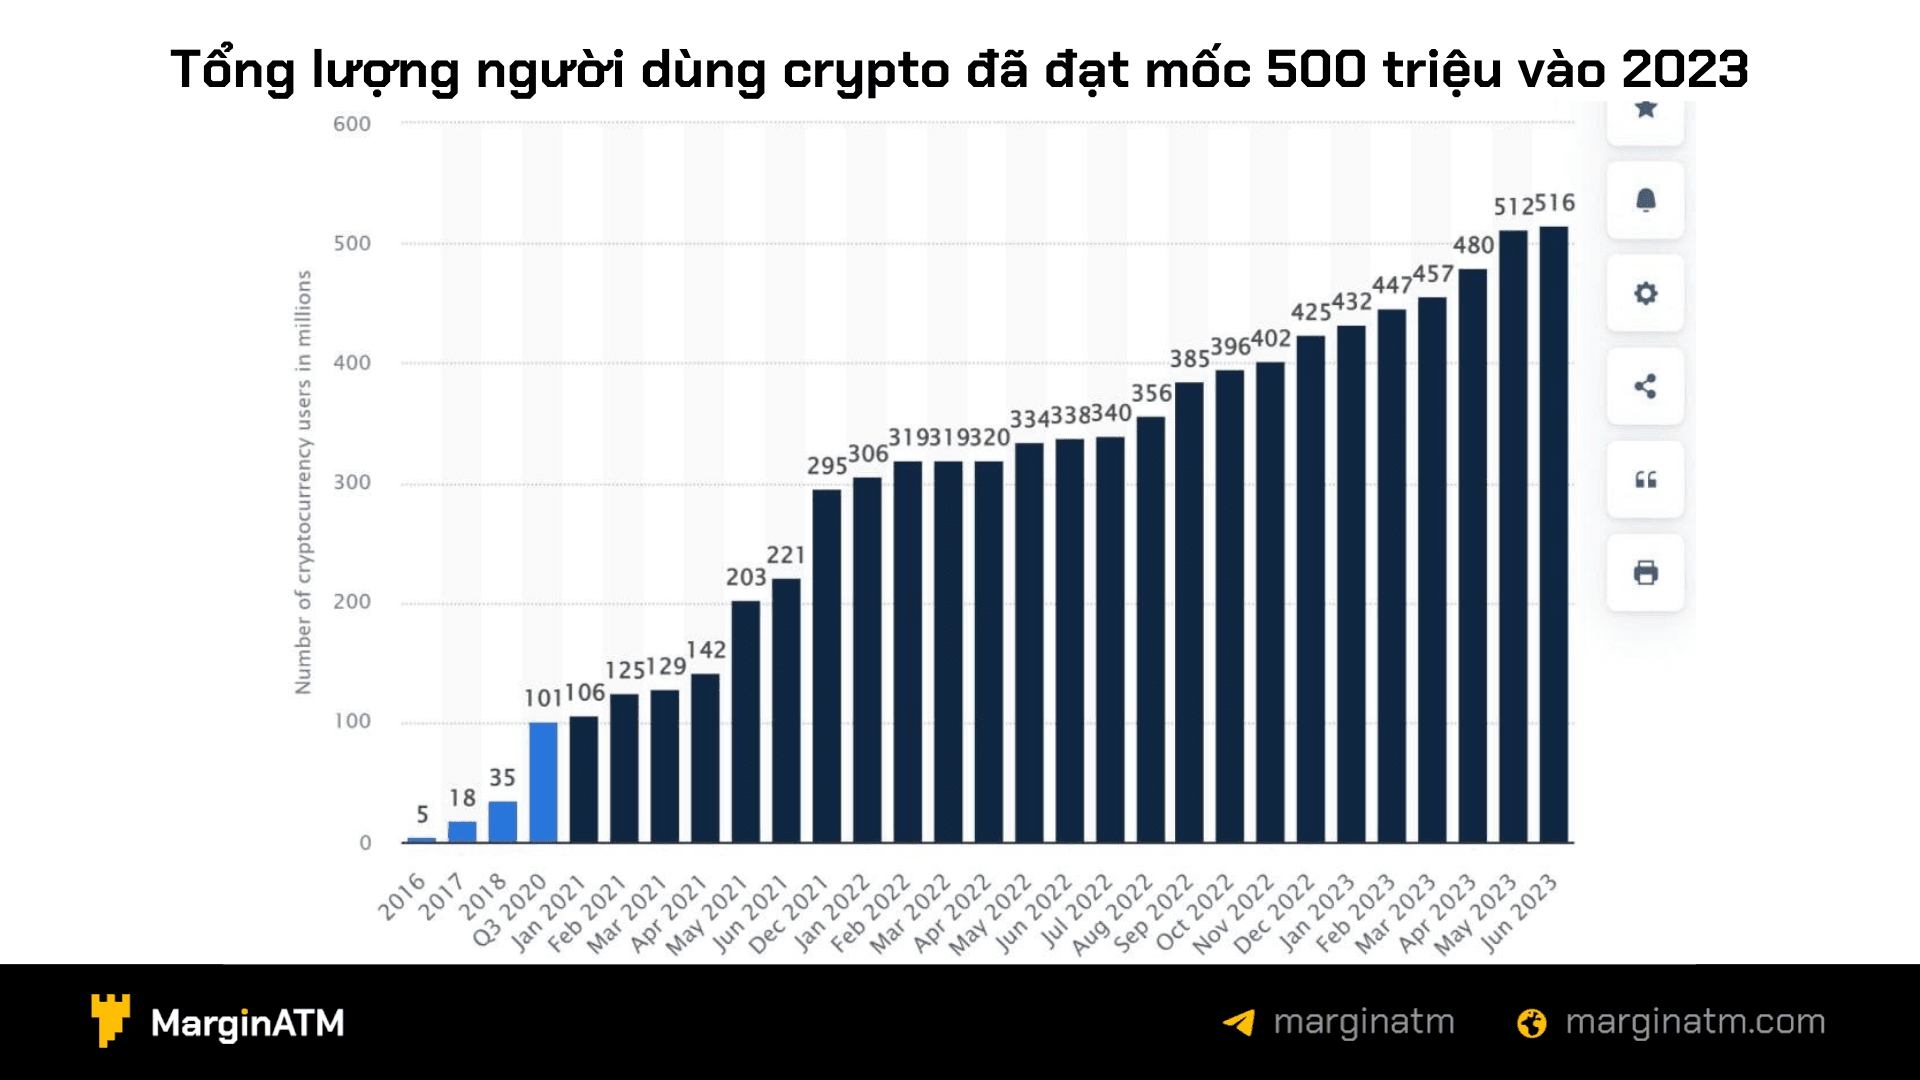 số lượng người dùng crypto tăng liên tục trong các năm